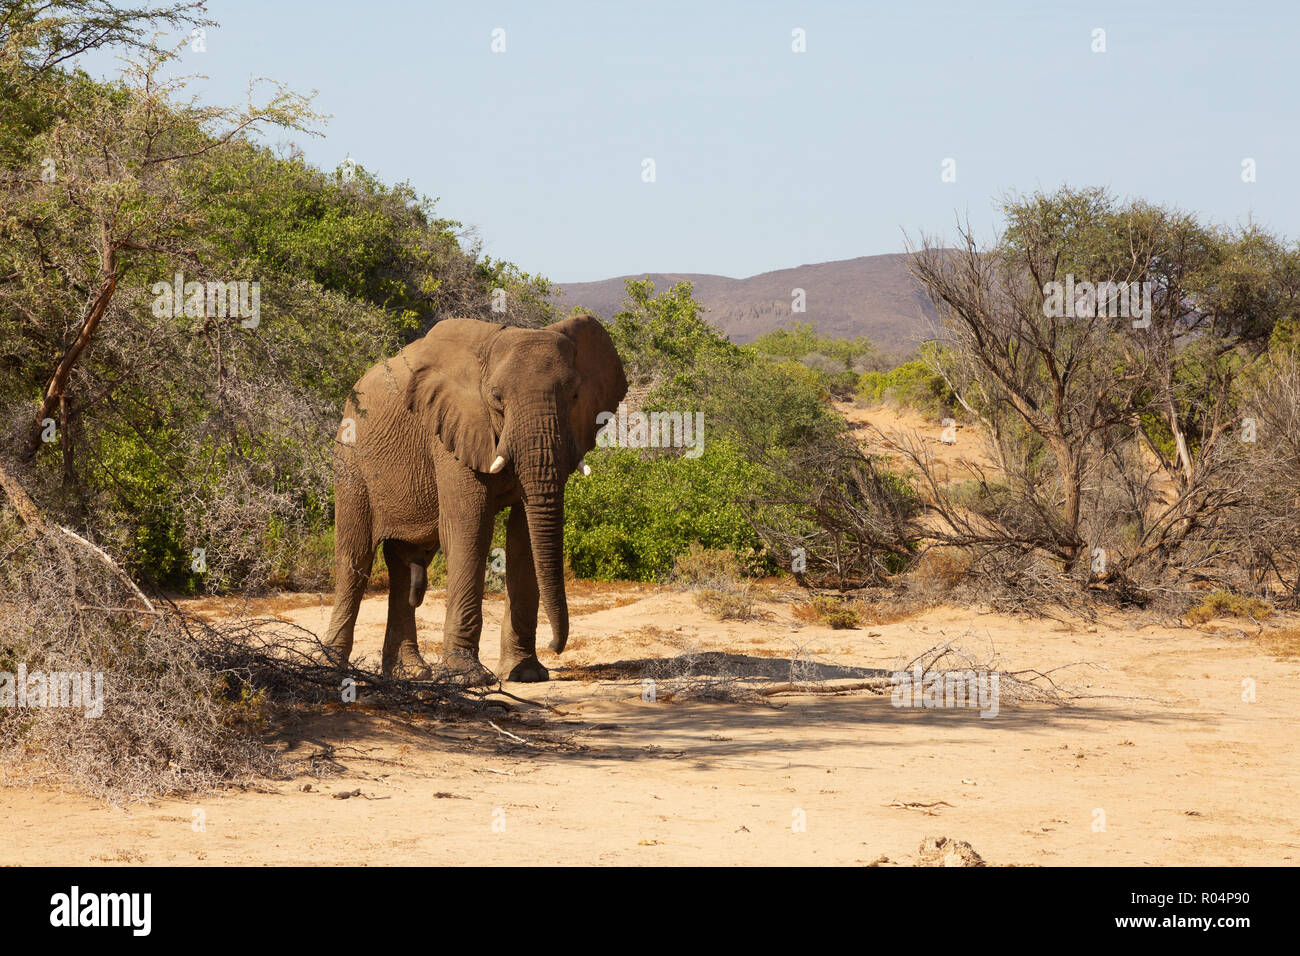 Namibie - l'éléphant d'un seul homme adulte, l'éléphant du désert Haub river bed, Damaraland, Namibie, Afrique du Sud Banque D'Images